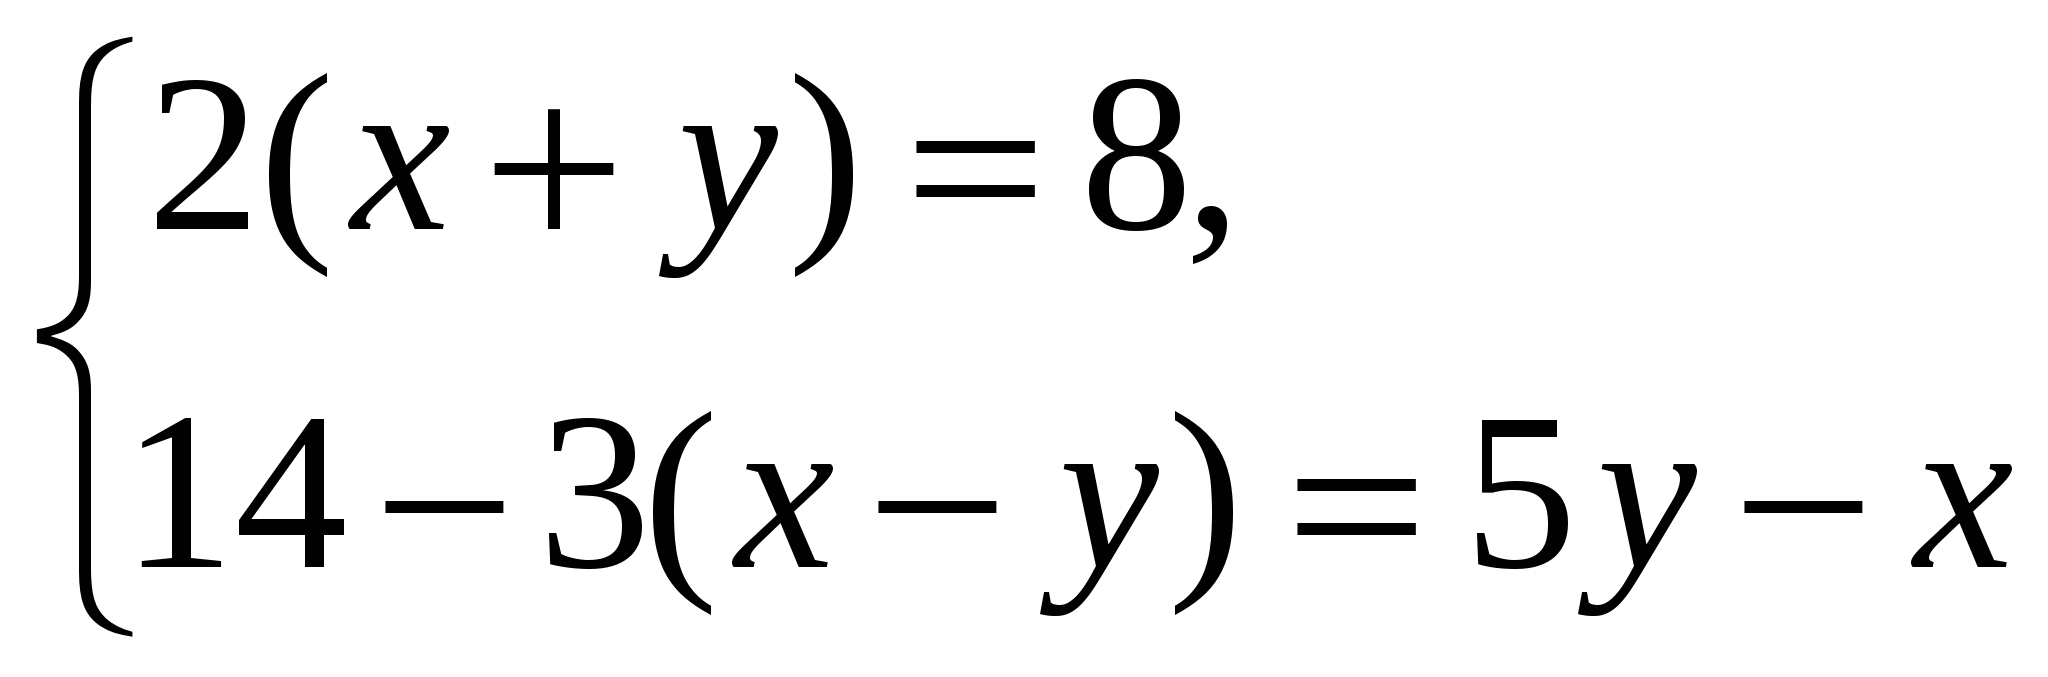 Решение систем 7 класс задания. Системы линейных уравнений с двумя переменными 7 класс. Система двух линейных уравнений с двумя переменными 7 класс. Системы линейных уравнений с двумя переменными 7 класс задания. Система линейных уравнений с двумя переменными 7 класс примеры.